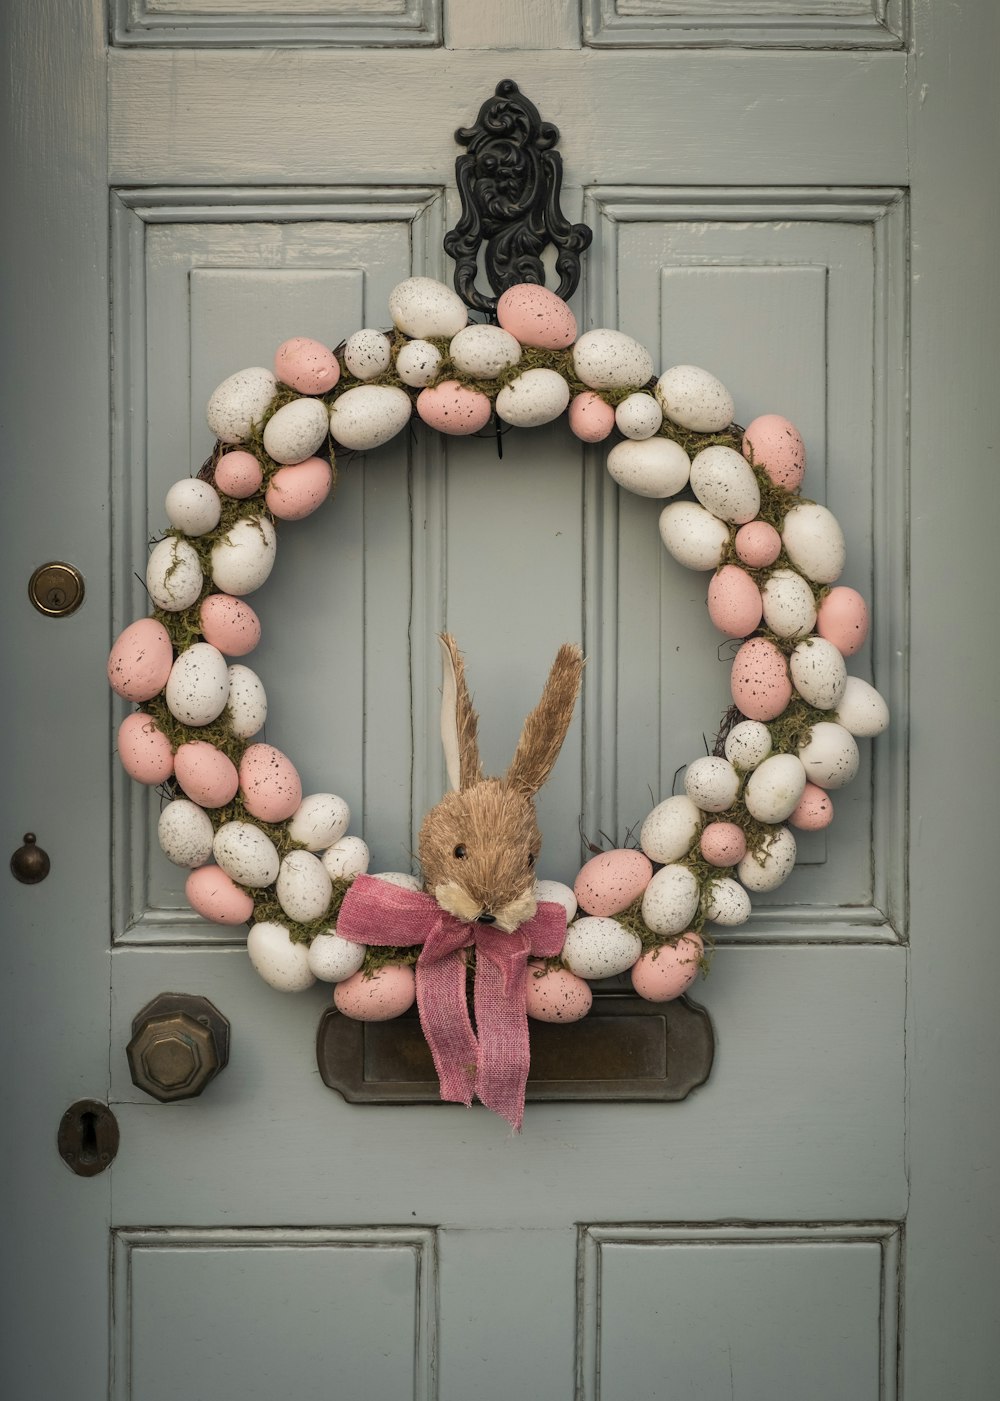 brown rabbit plush toy on gray wooden door